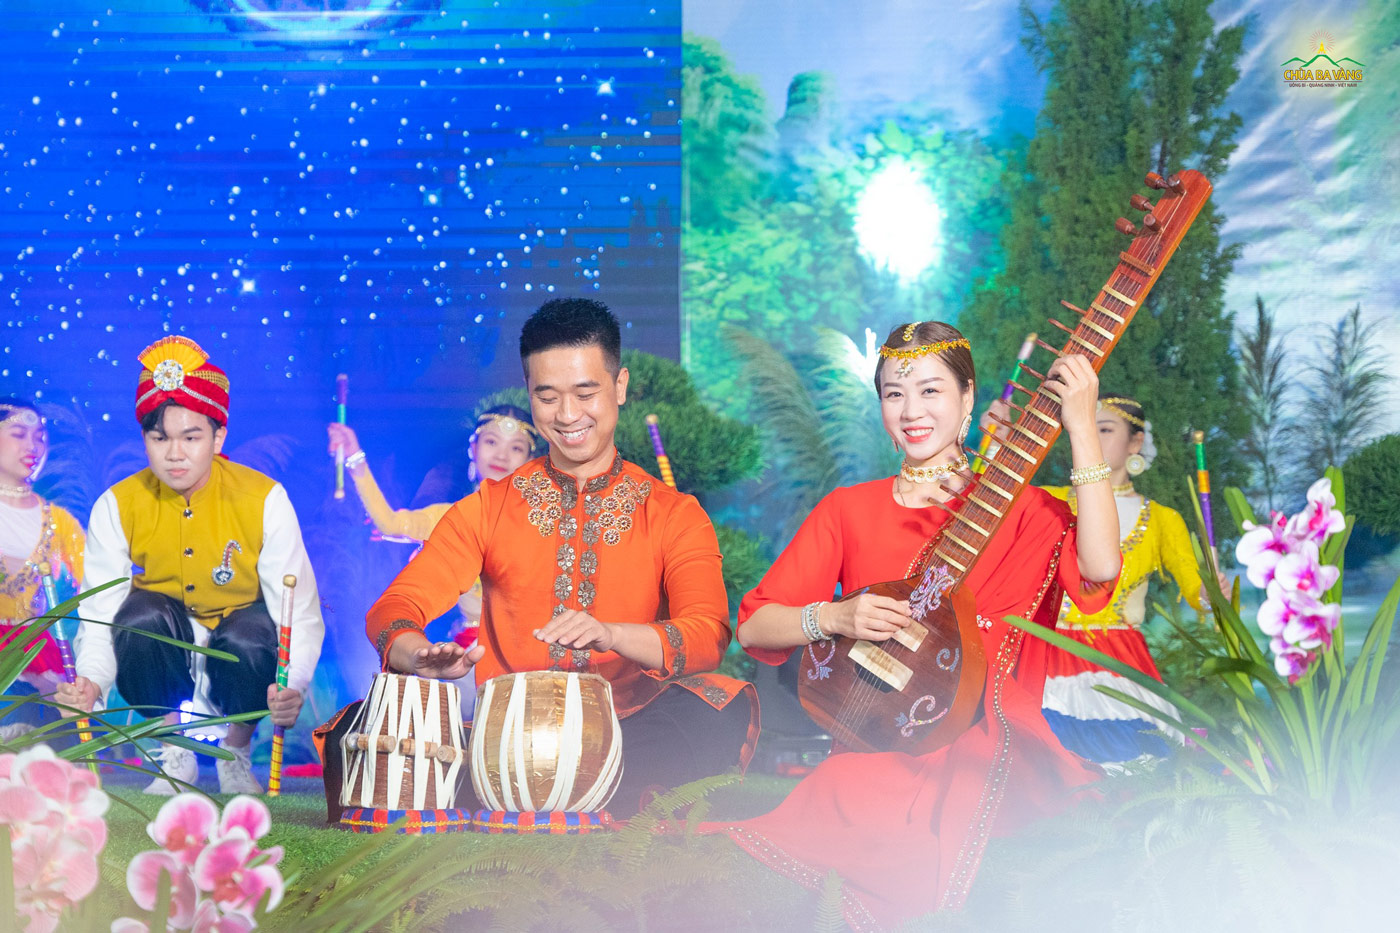   Với các nhạc cụ truyền thống của Ấn Độ như đàn Sitar, trống Tabla, trống Pakhawaj,... vũ đoàn BamBoo mang tới những giai điệu vui tươi  